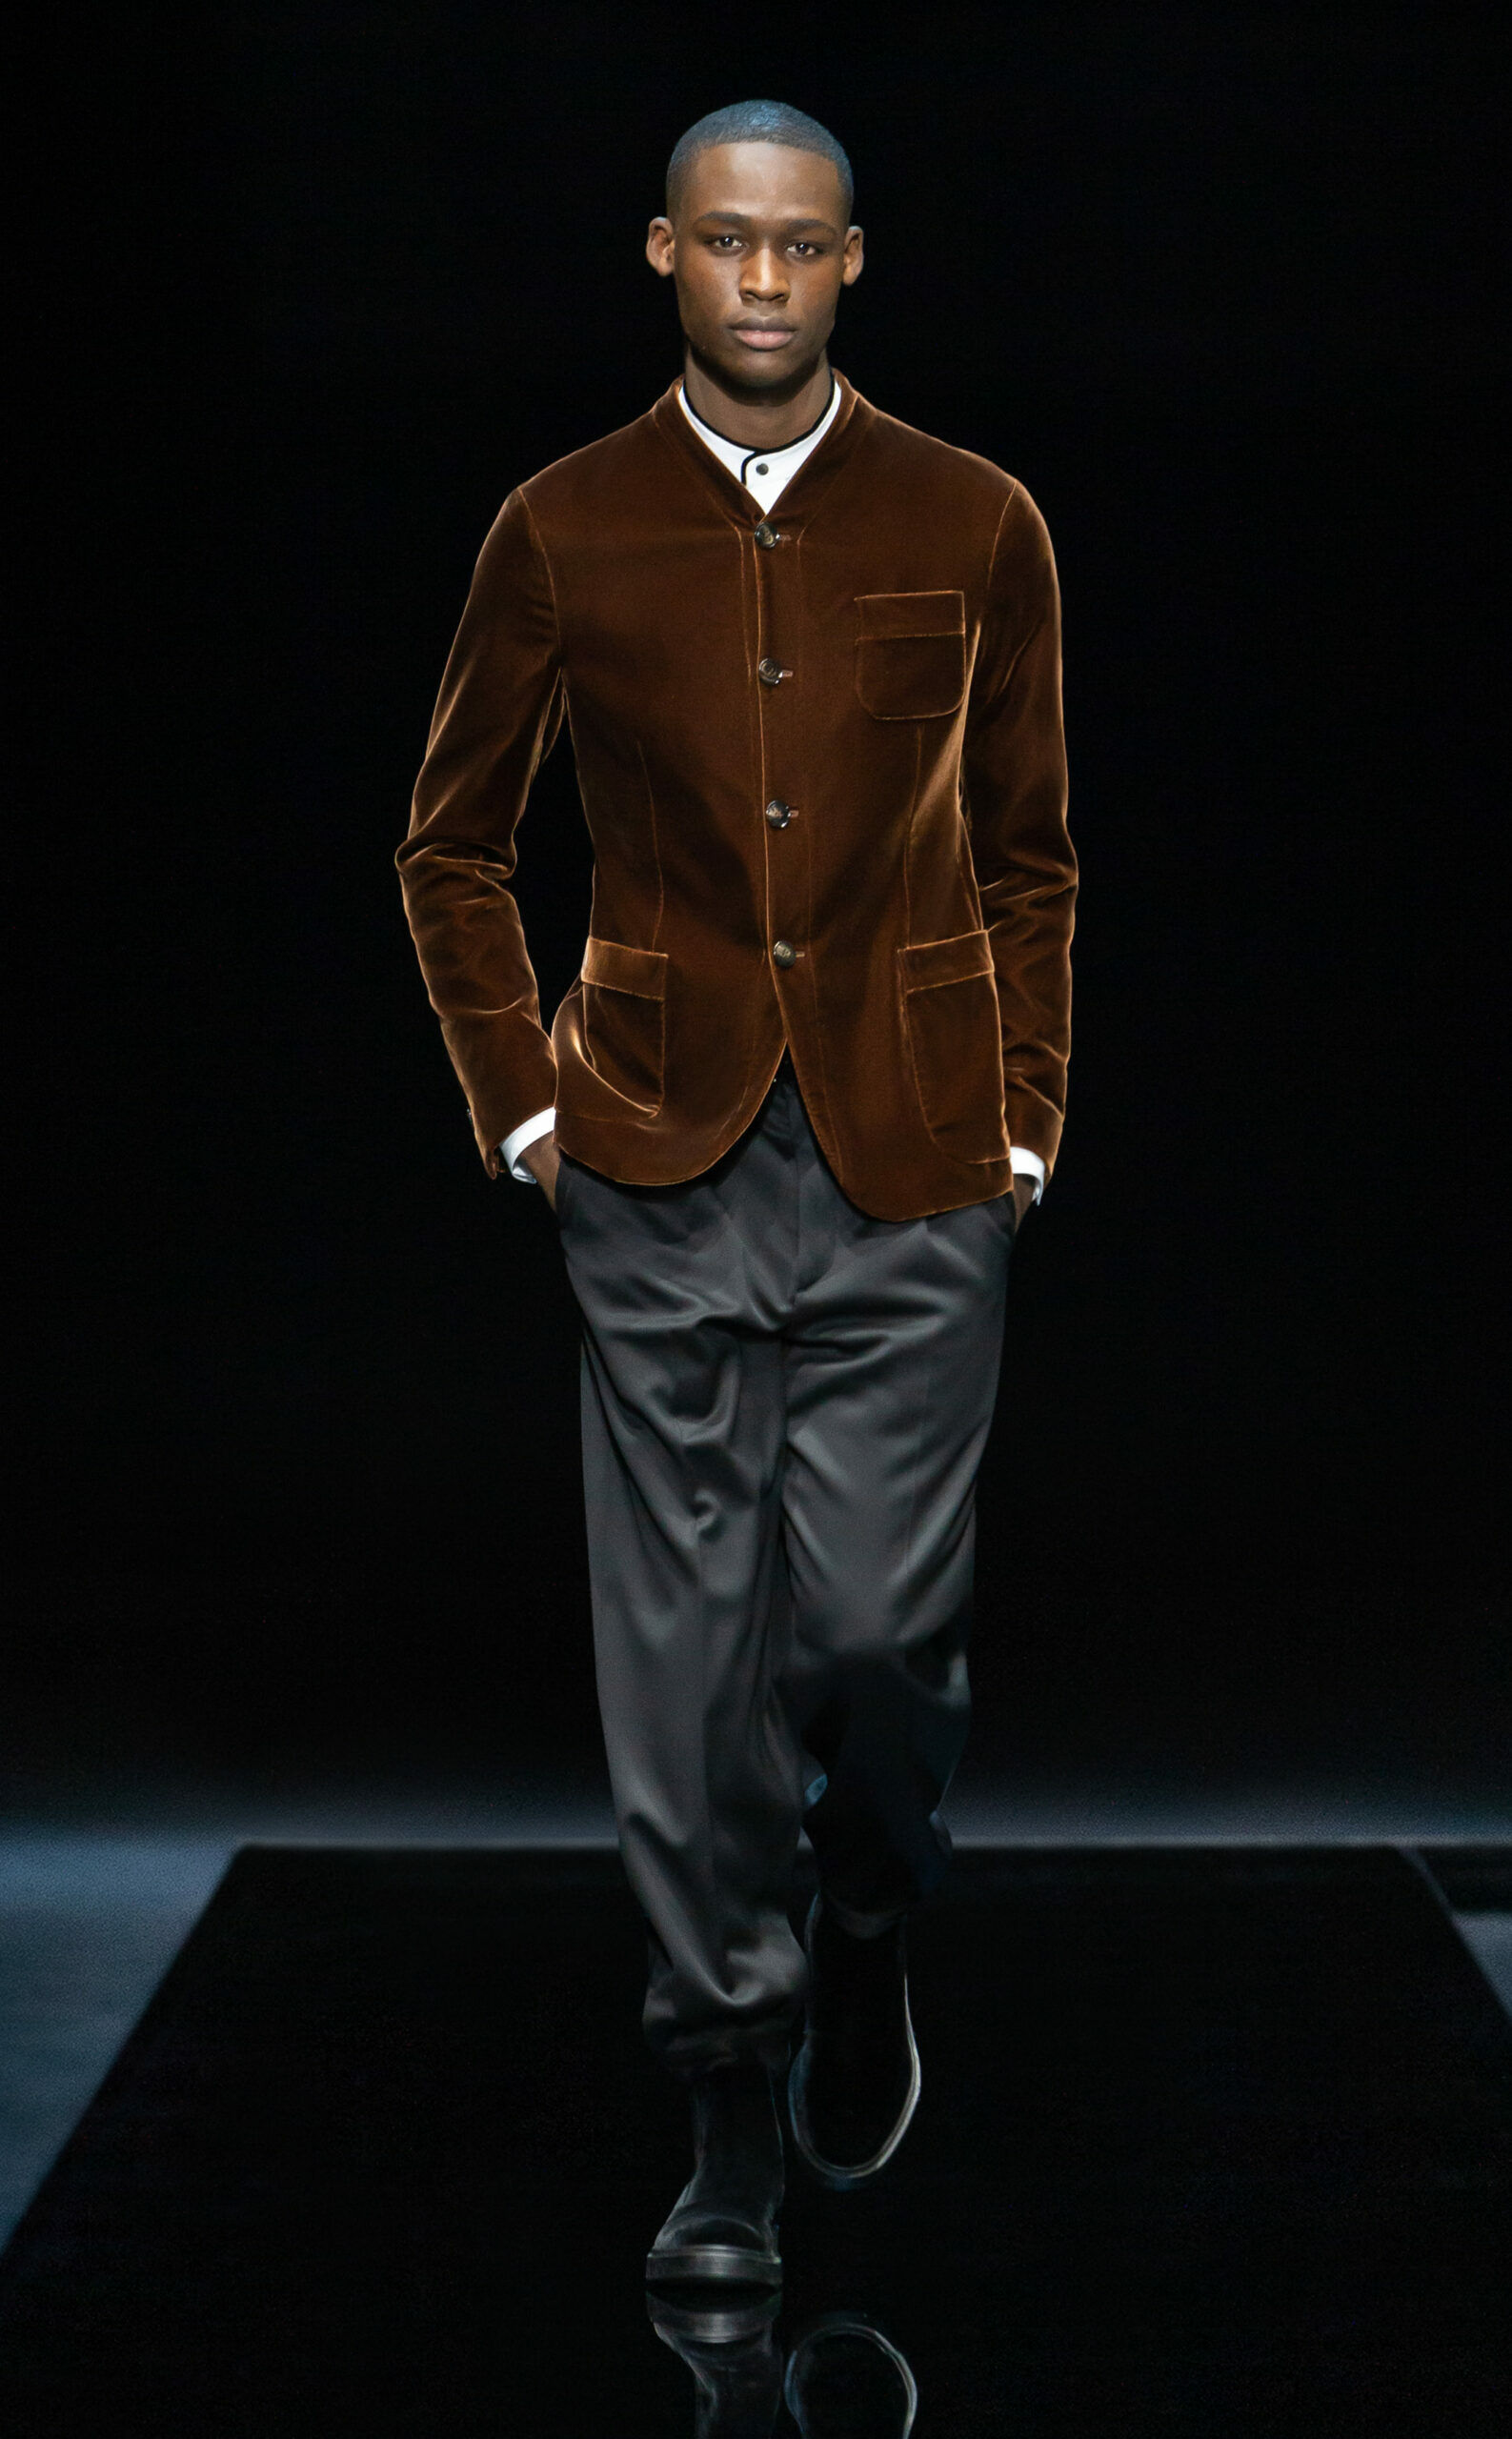 Ein Model auf dem Laufsteg, er trägt einen Samt-Sakko zu einer dunklen Stoffhose.